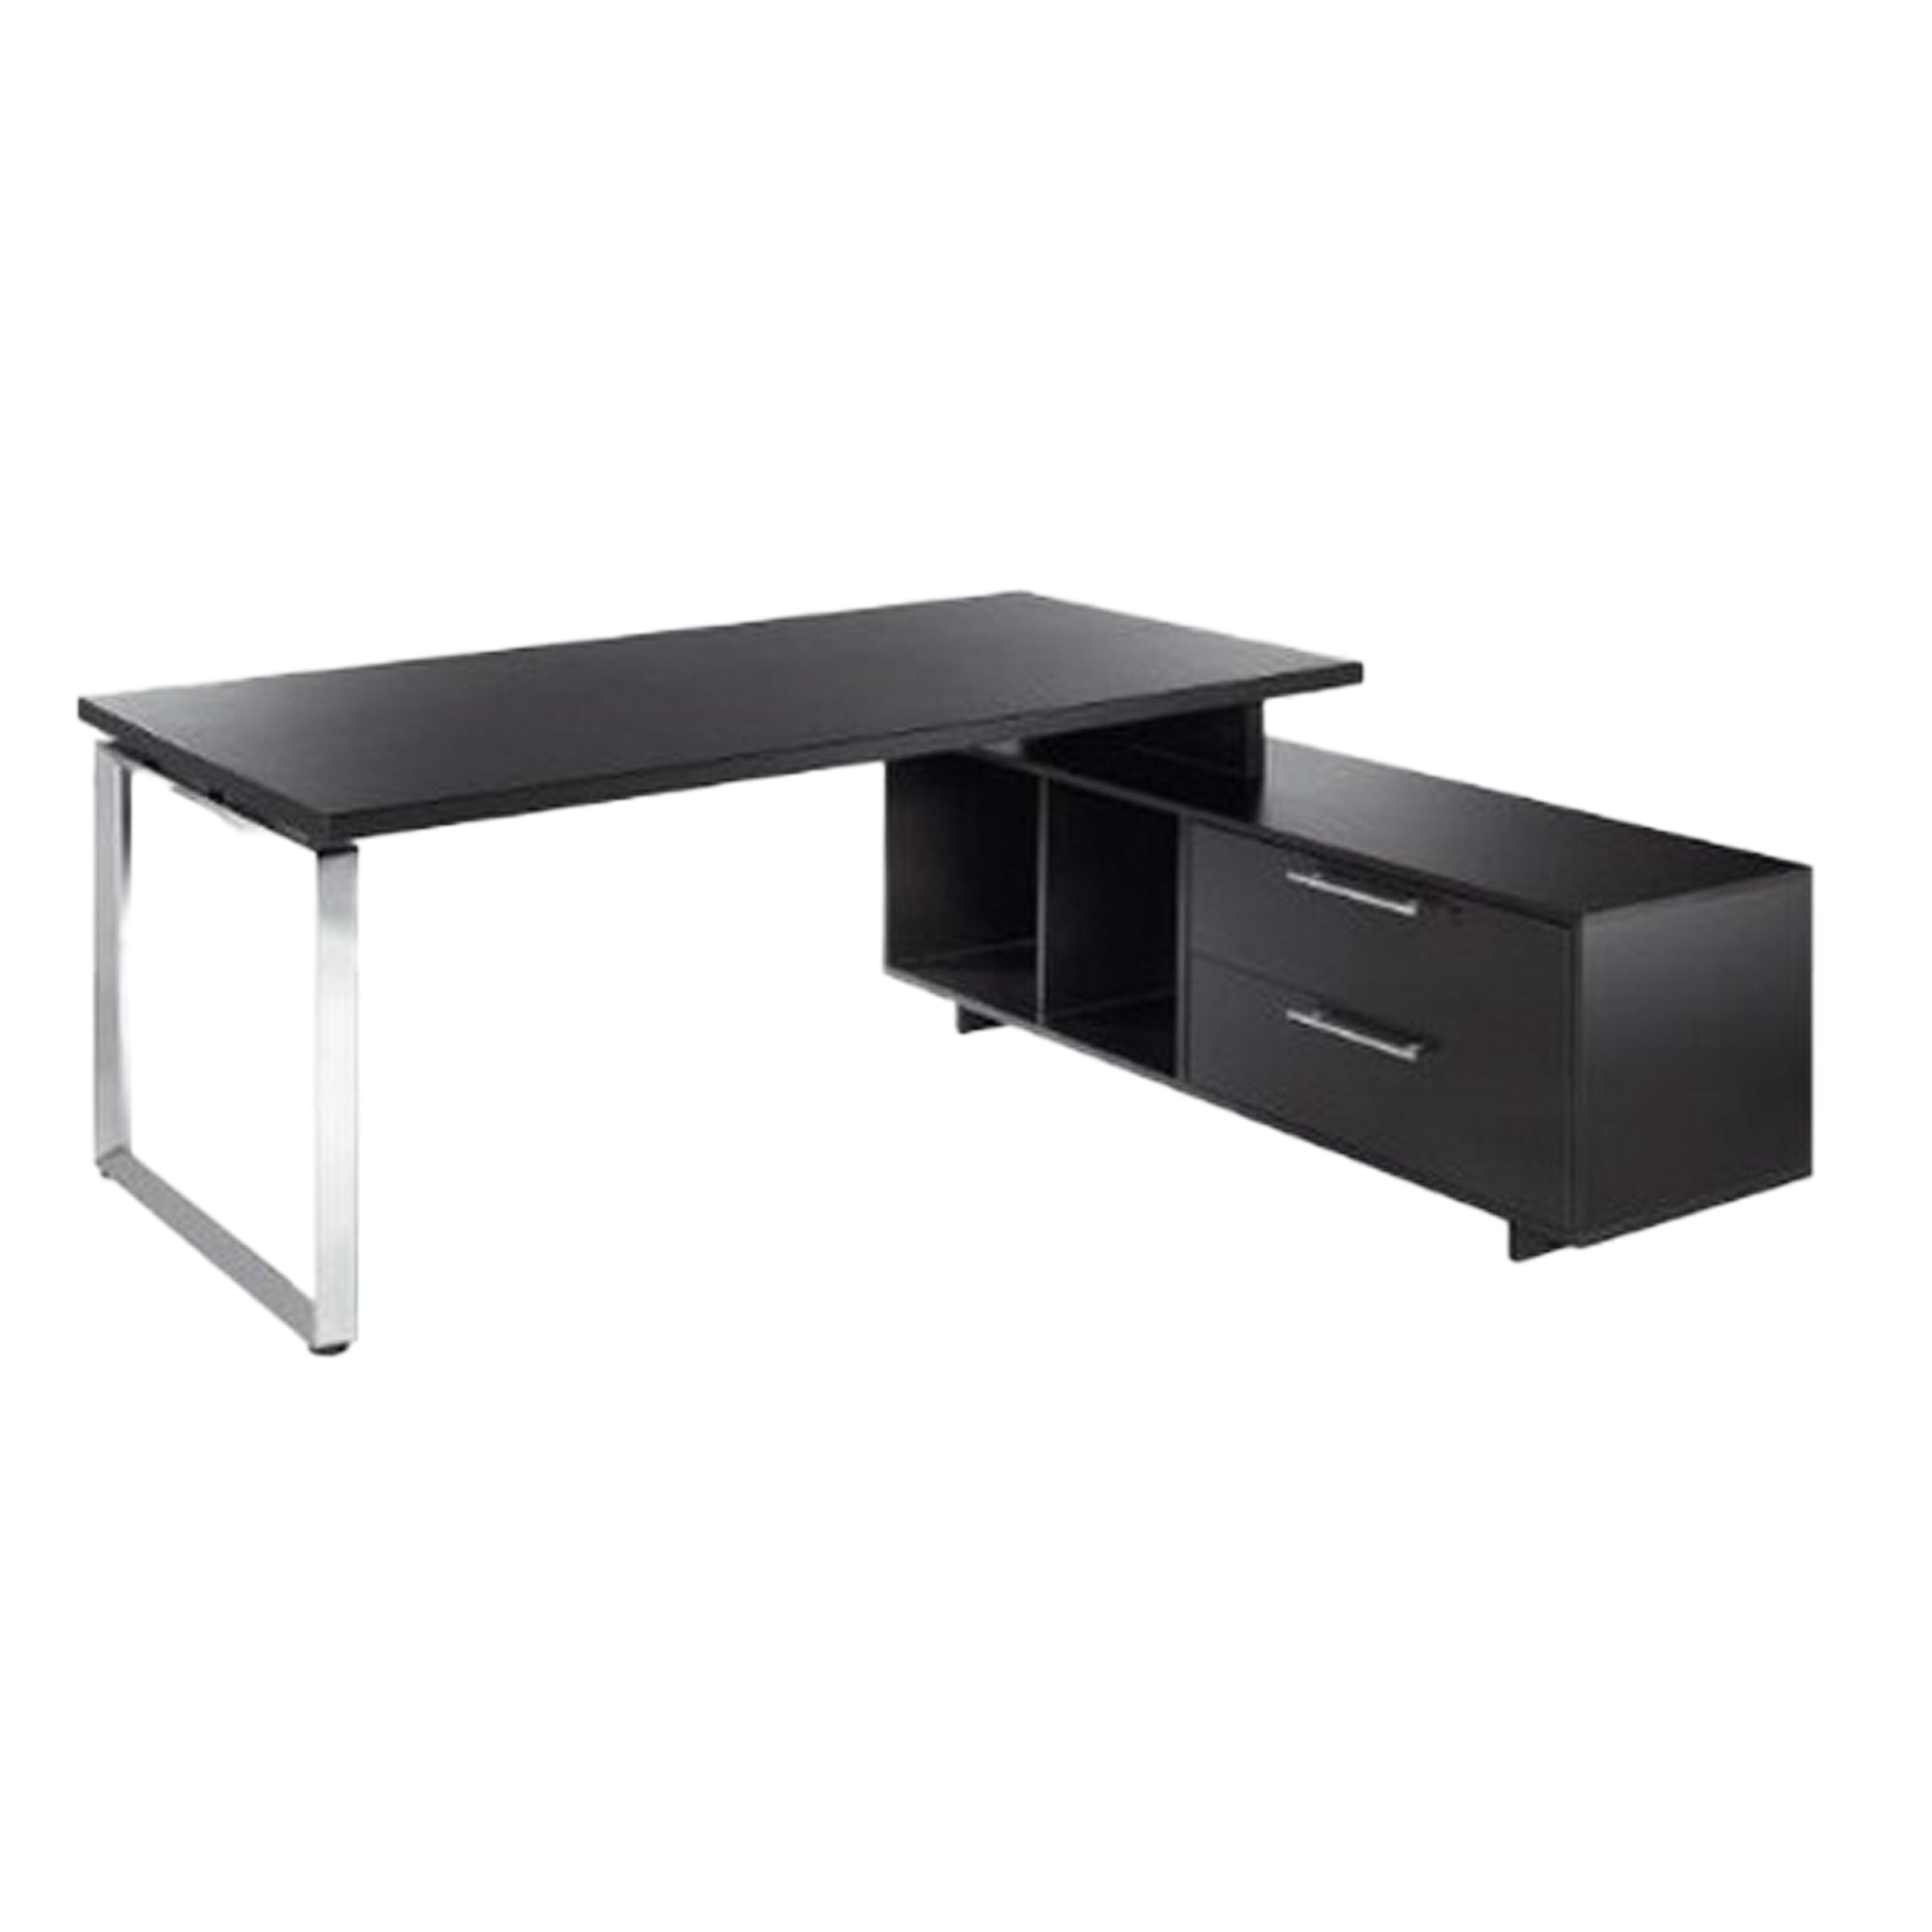 artexport-scrivania-manager-180x90cm-c-mobile-servizio-rev-nero-ven-prestige-metal